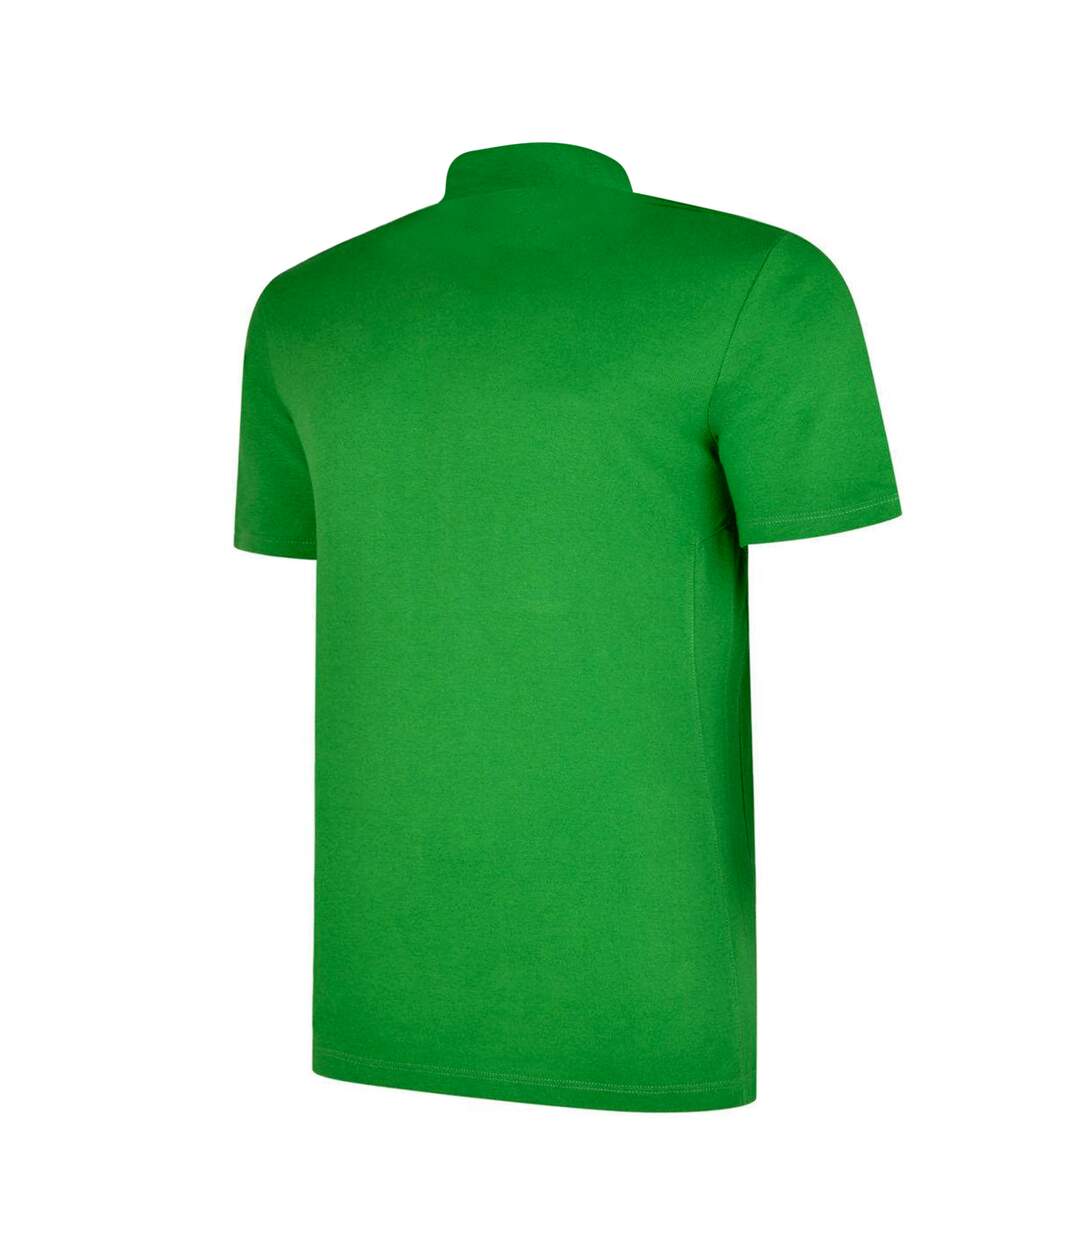 Umbro Mens Essential Polo Shirt (Emerald/White)